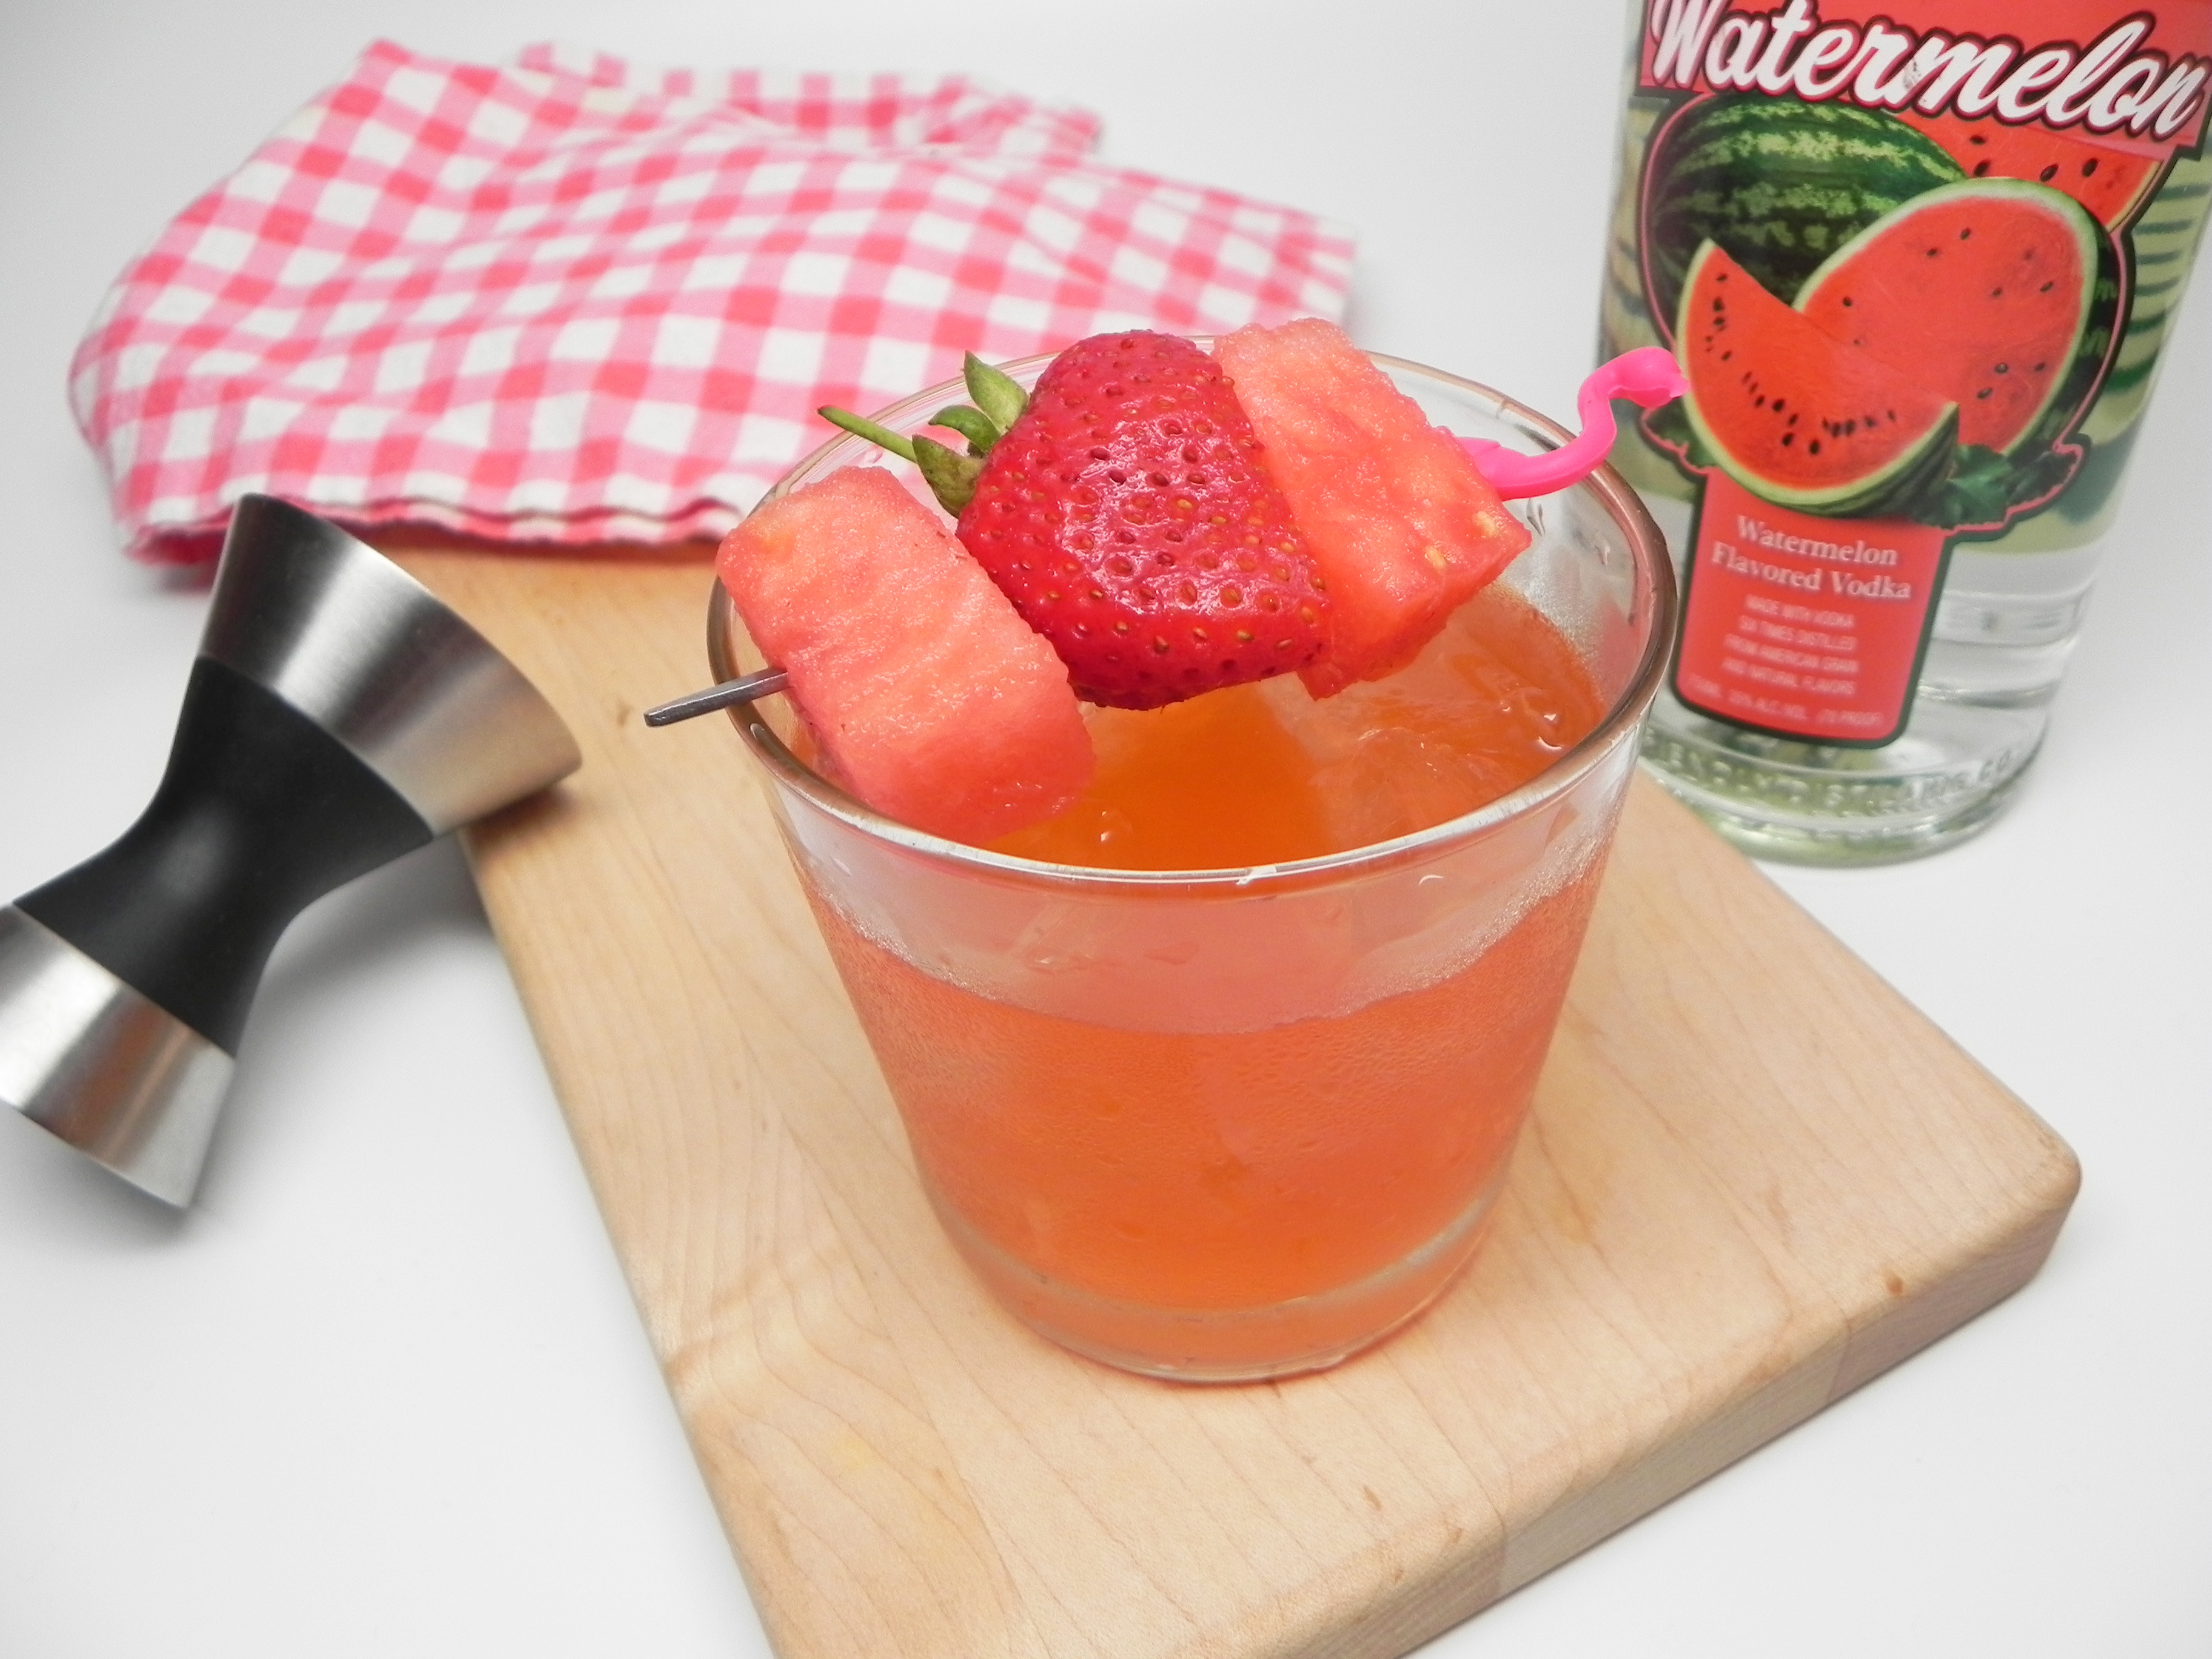 Watermelon-Strawberry Martini